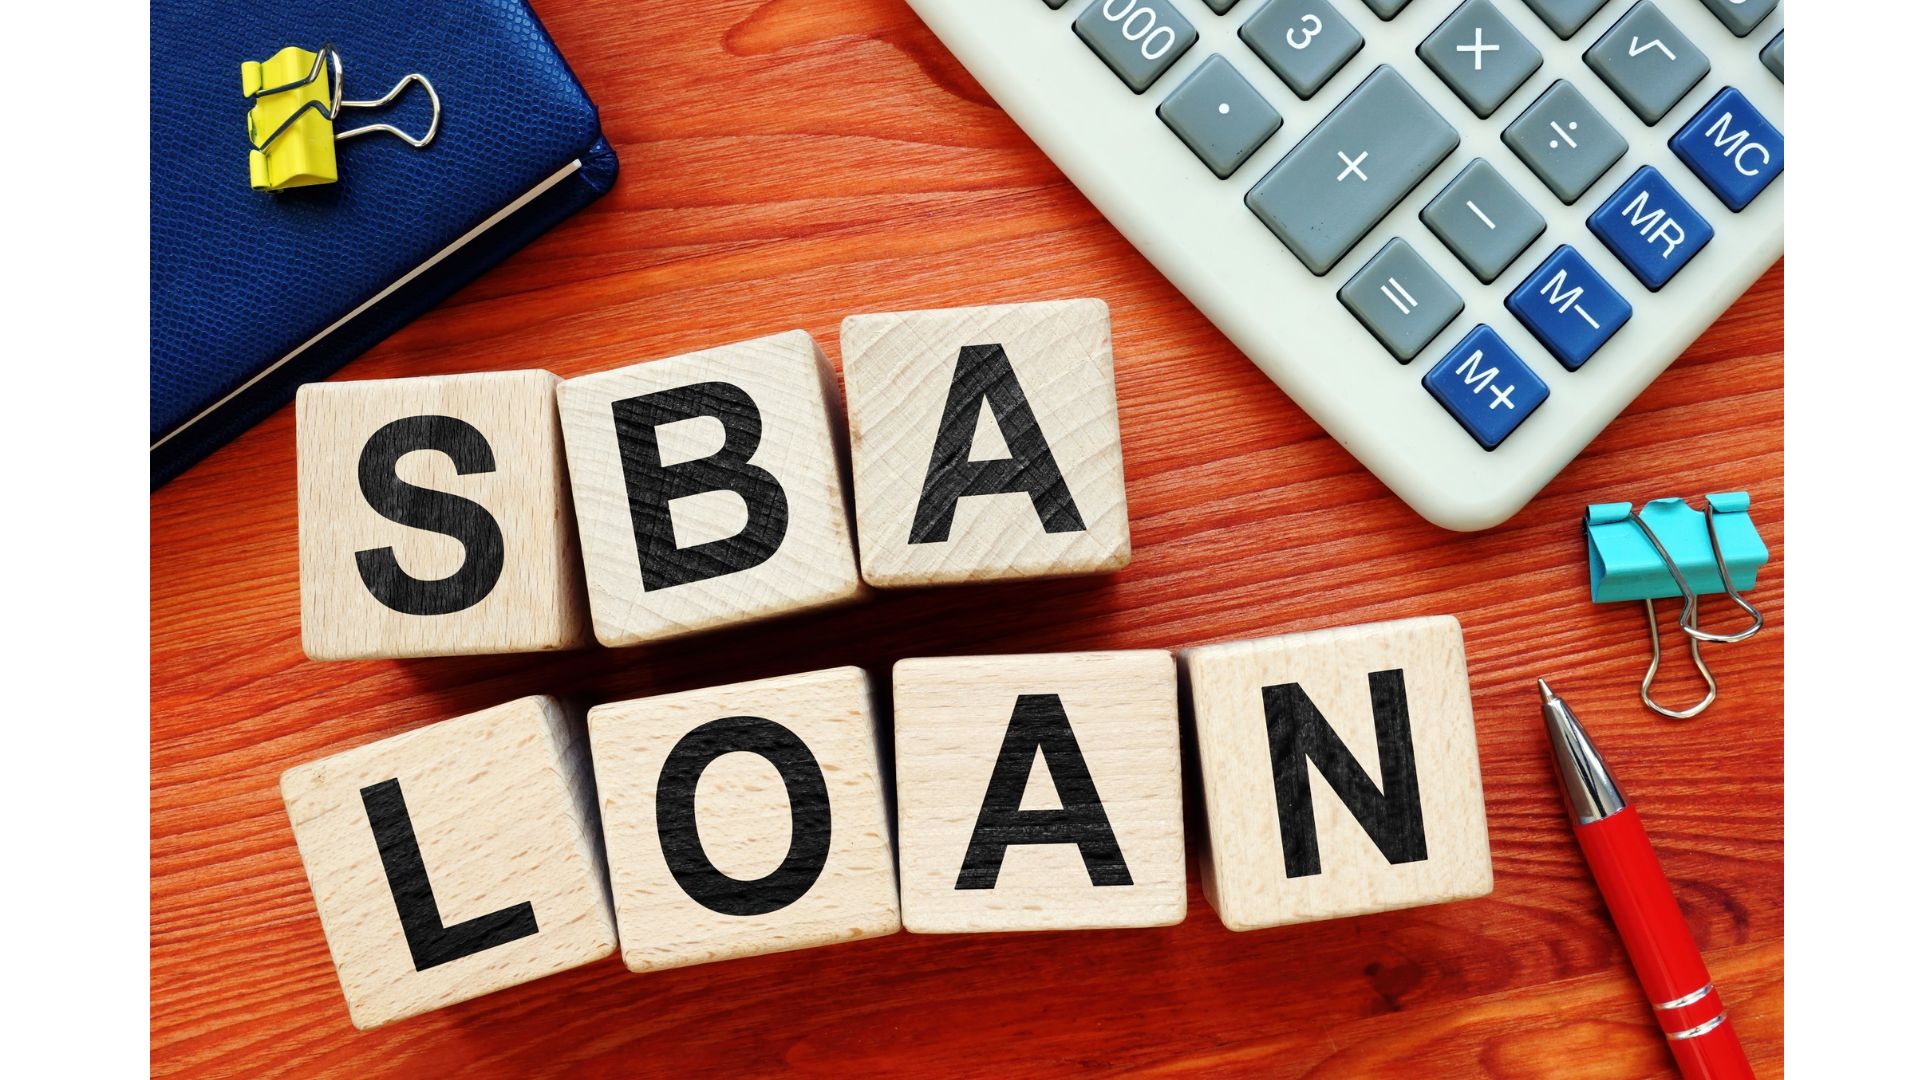 SBA Loans